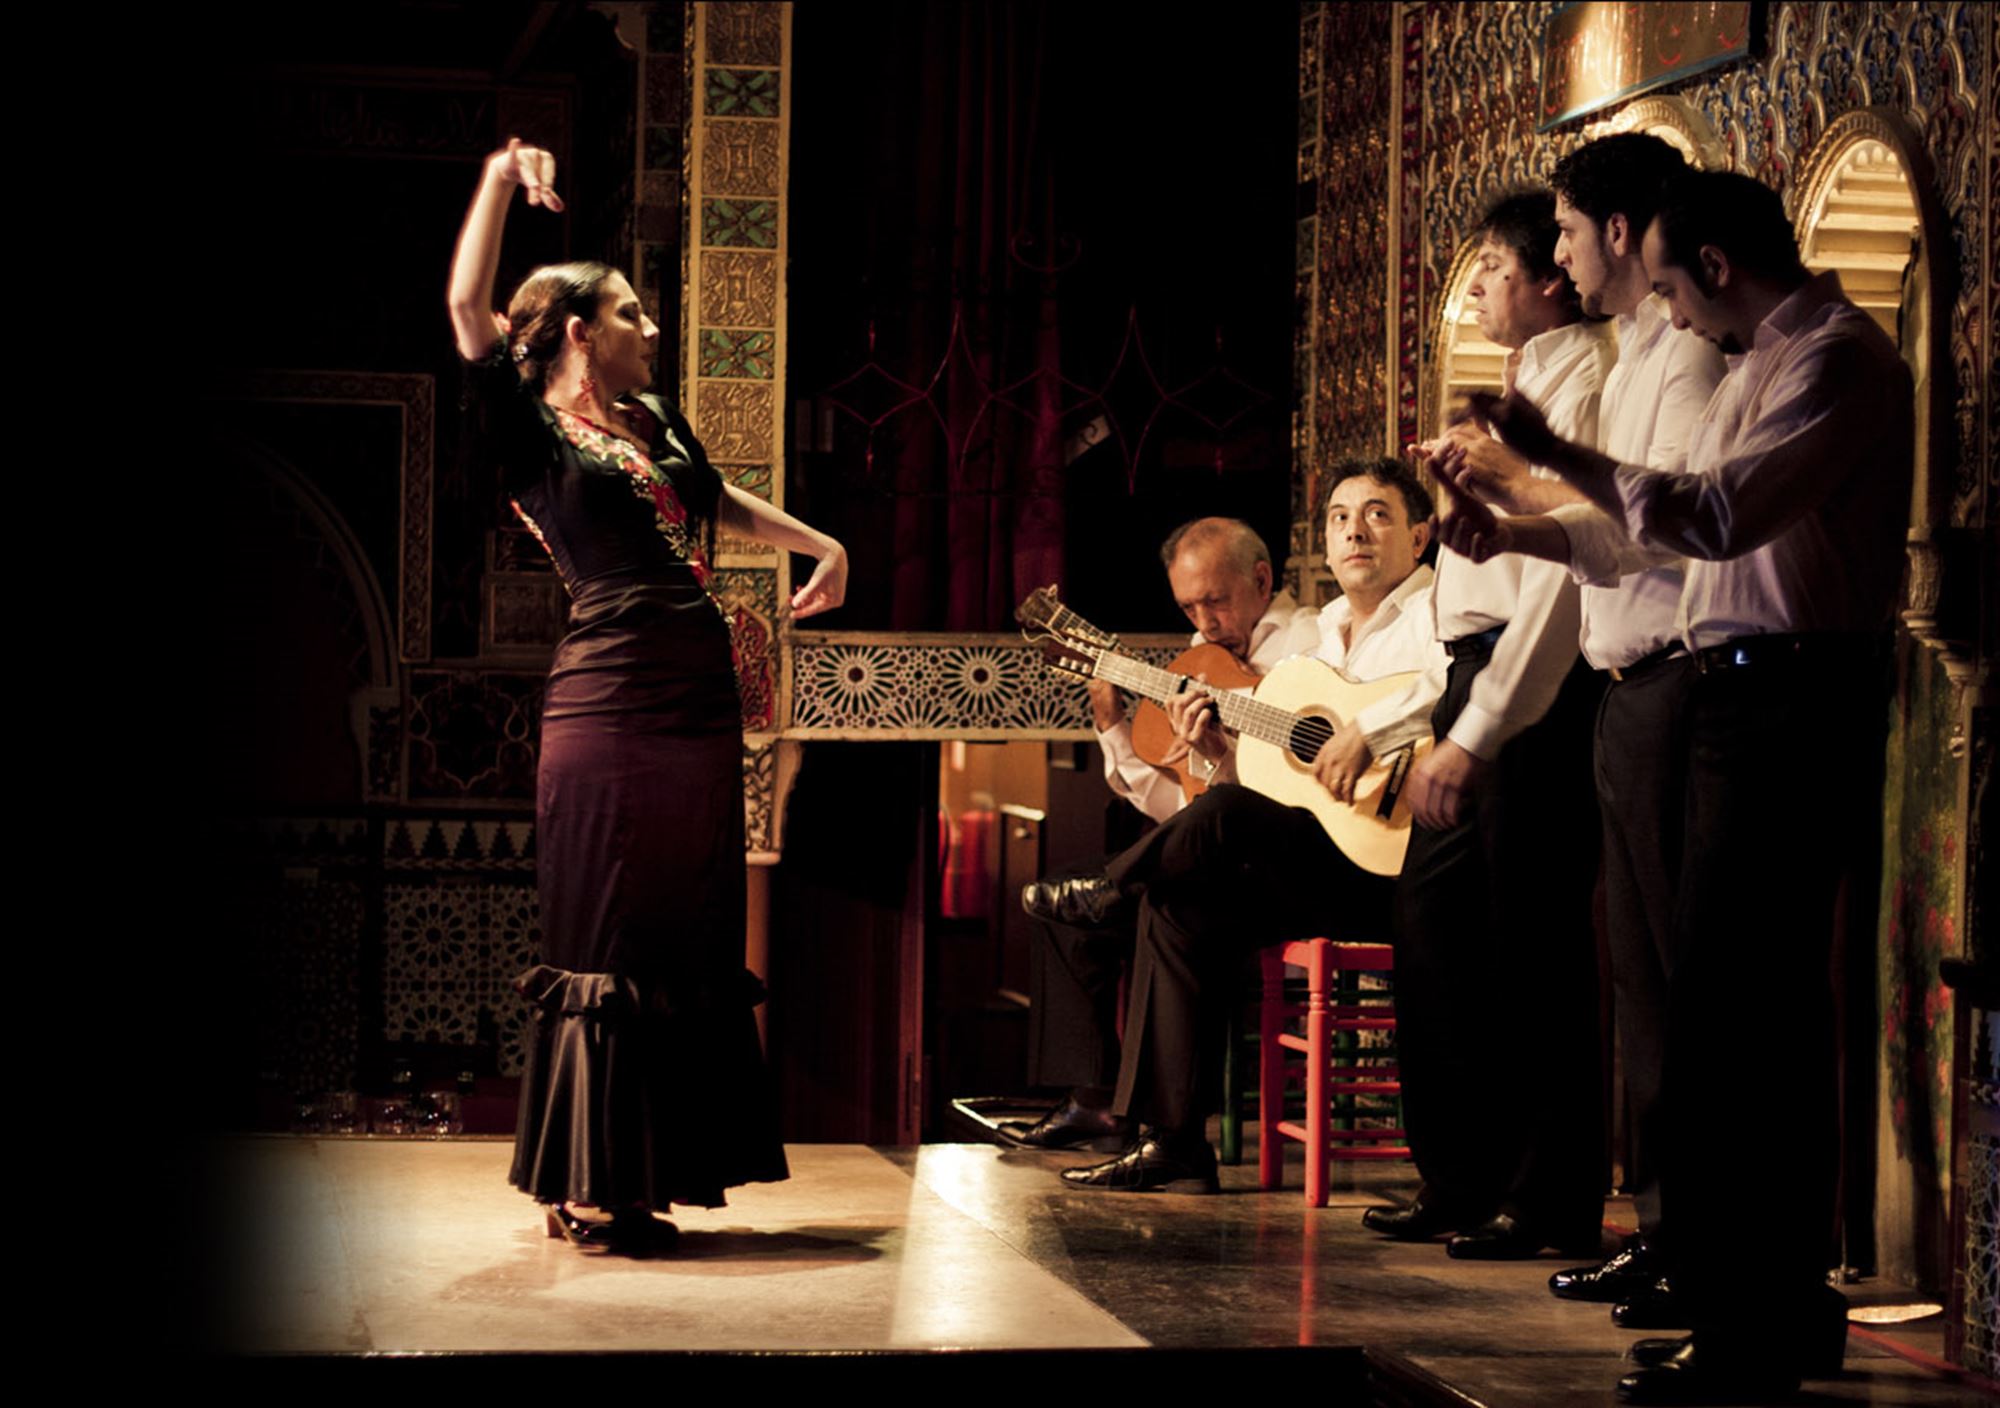 réservations tours Spectacle du flamenco au Tablao Torres Bermejas billets visiter madrid